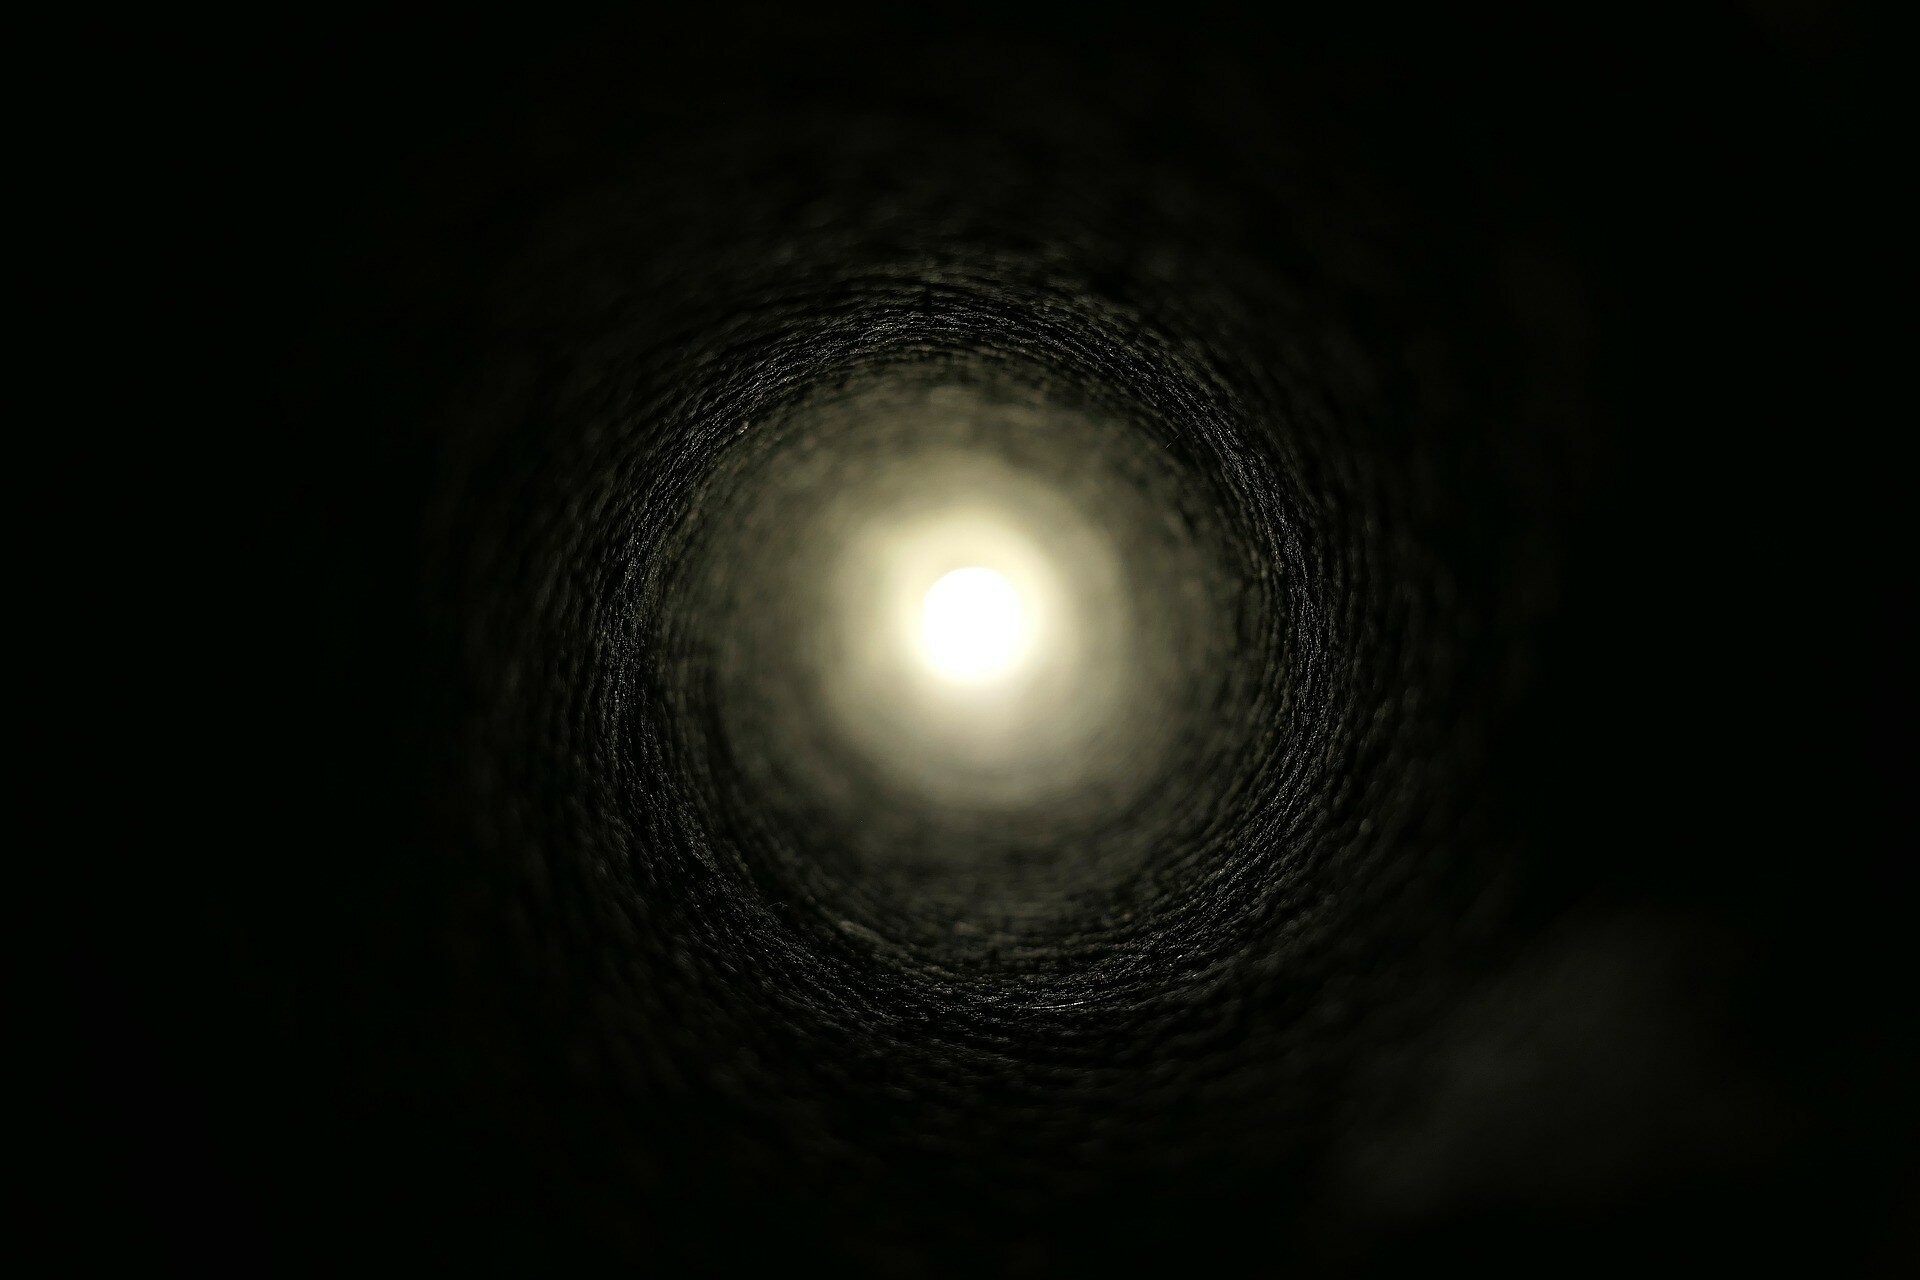 Оптическая иллюзия с "черной дырой" в шаре озадачила сеть